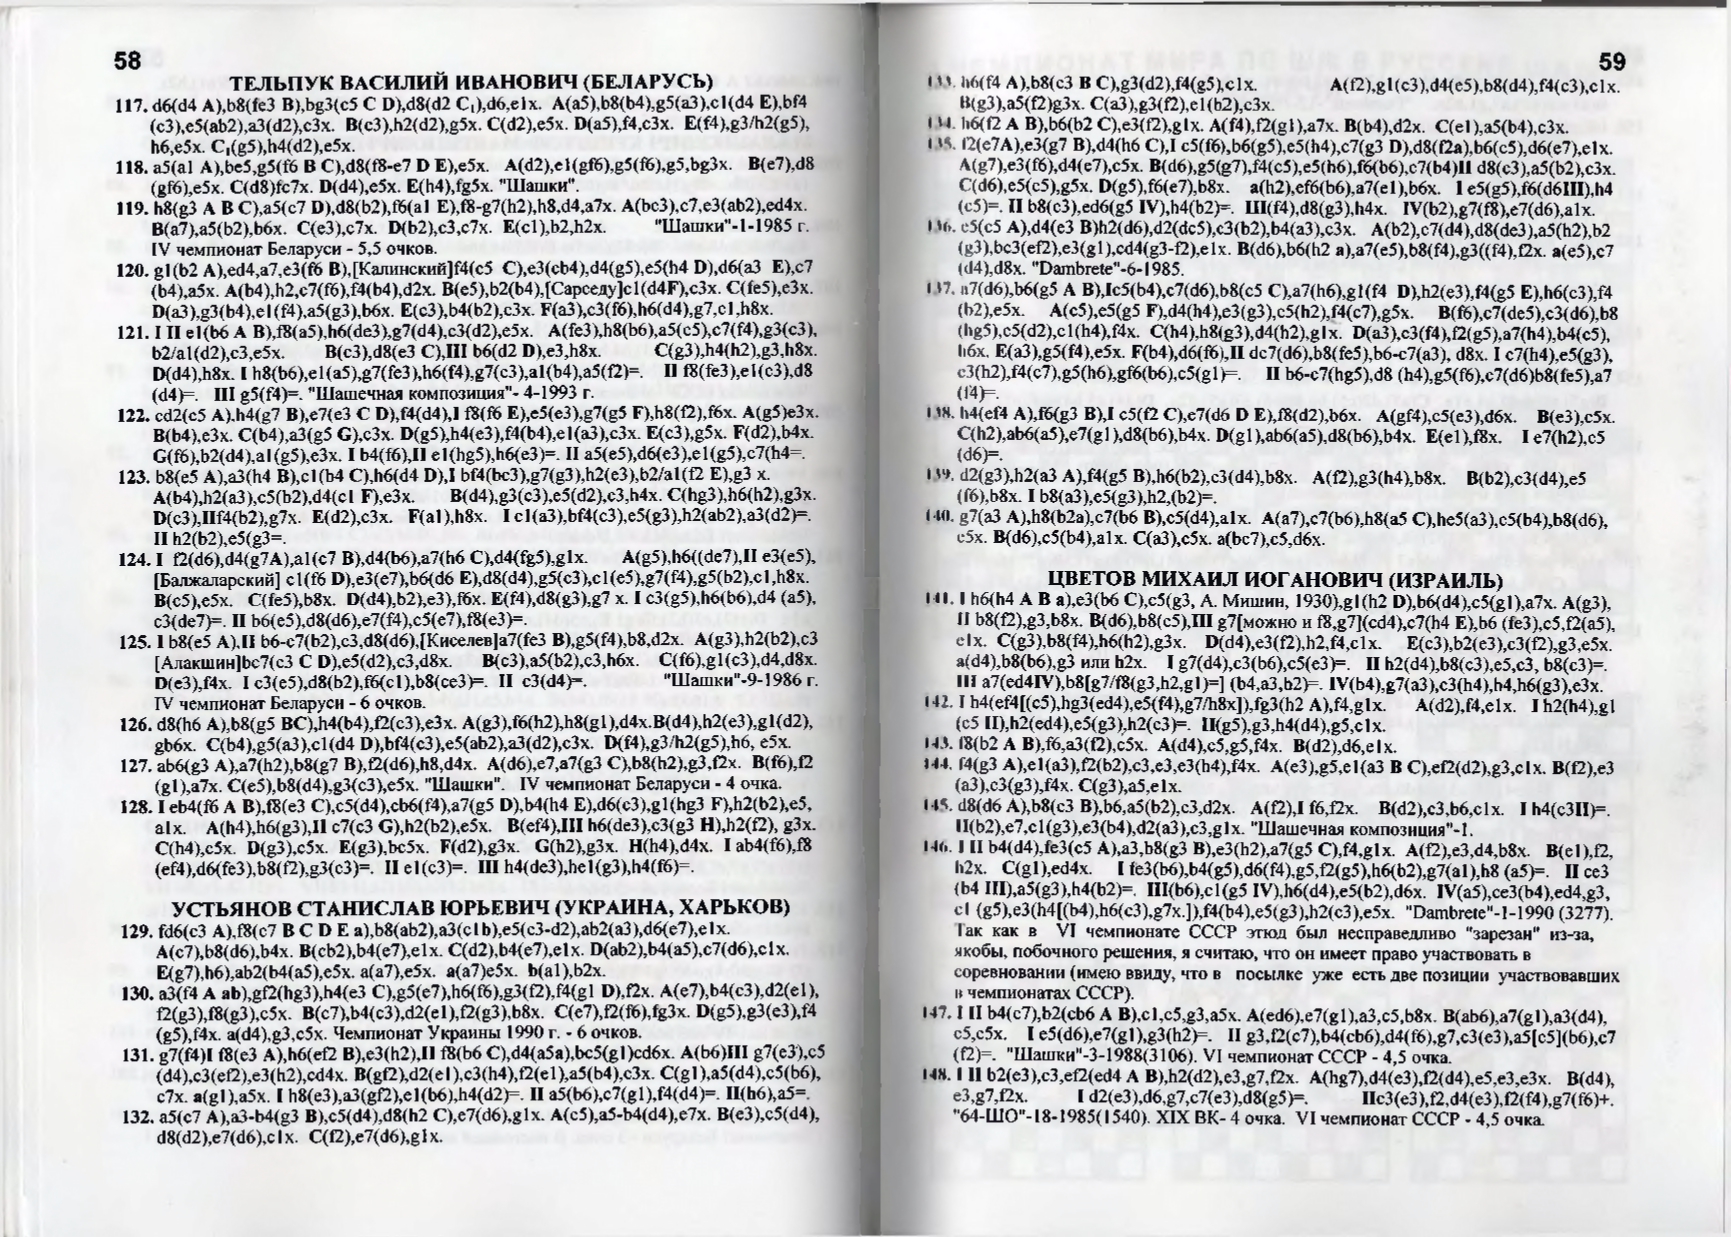 Gorin-Chempionat_mira_po_shashechnoy_kompozitsii_1994-339_page-0031.jpg